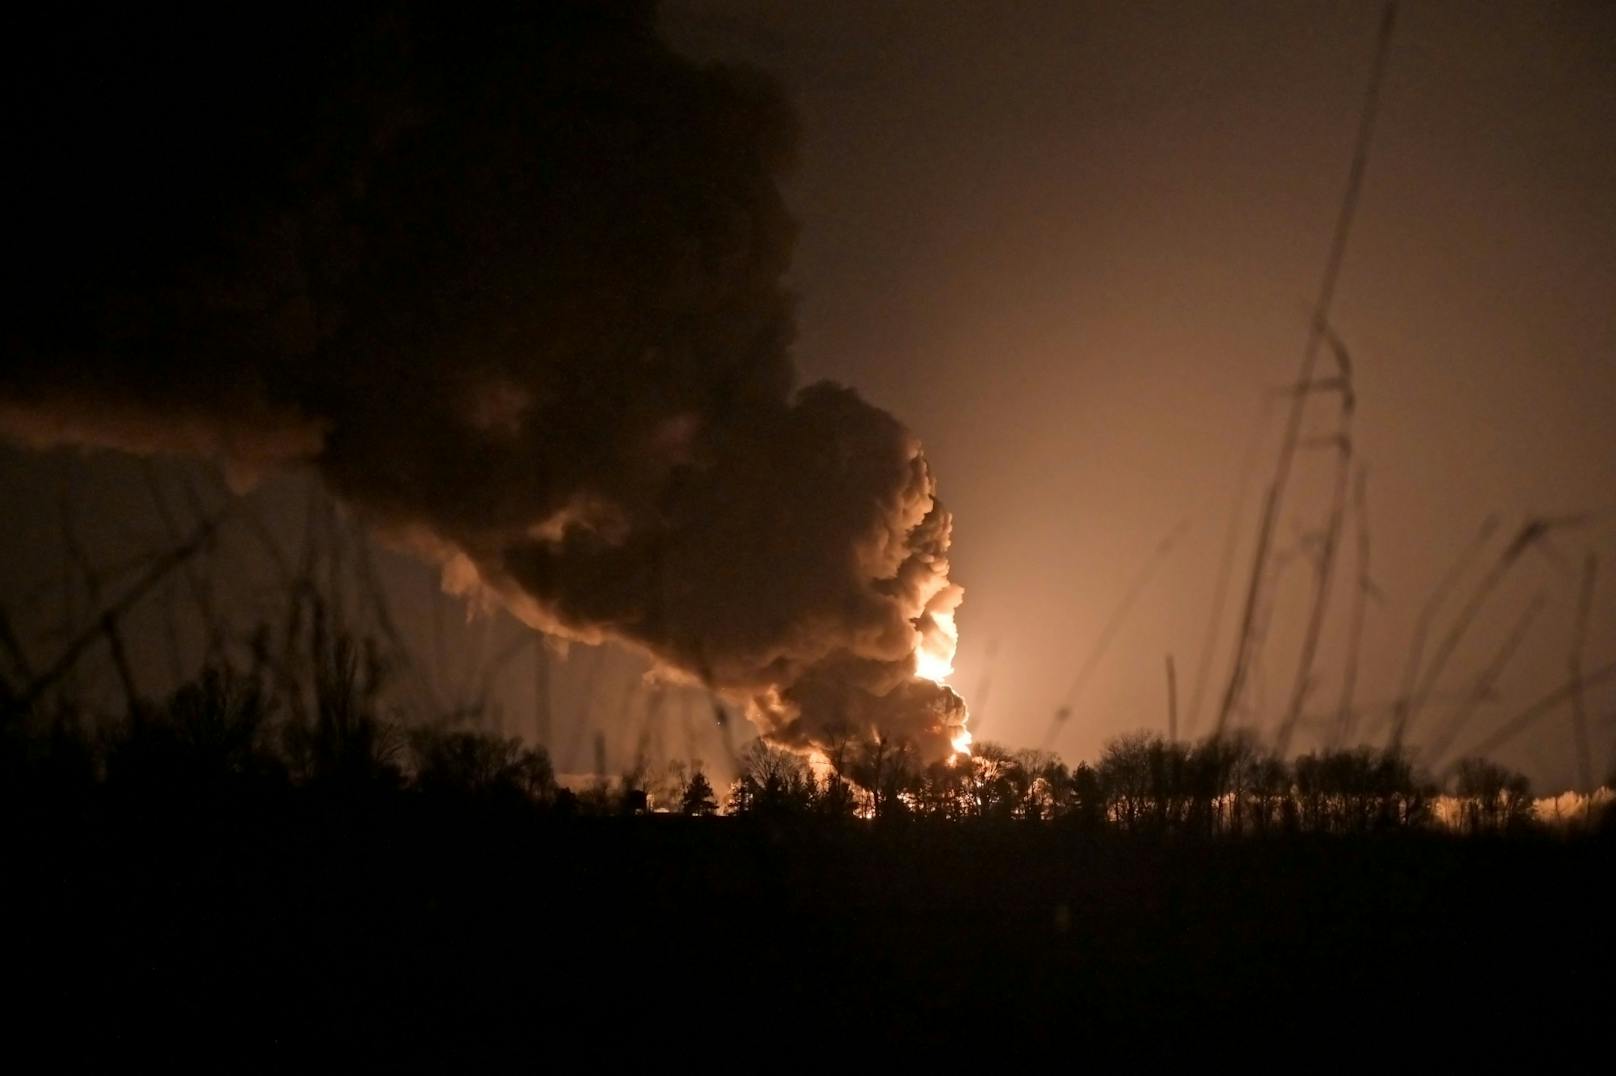 Auch am vierten Tag dauern die Kämpfe noch weiter an: Das Öldepot in Vasylkiv, 40 Kilometer südlich von Kiew (Ukraine), brennt. "Uns droht eine ökologische Katastrophe. Wir tun alles, um dies zu verhindern!",&nbsp;sagt die Bürgermeisterin Natalia Balasinovich in einer Videobotschaft.